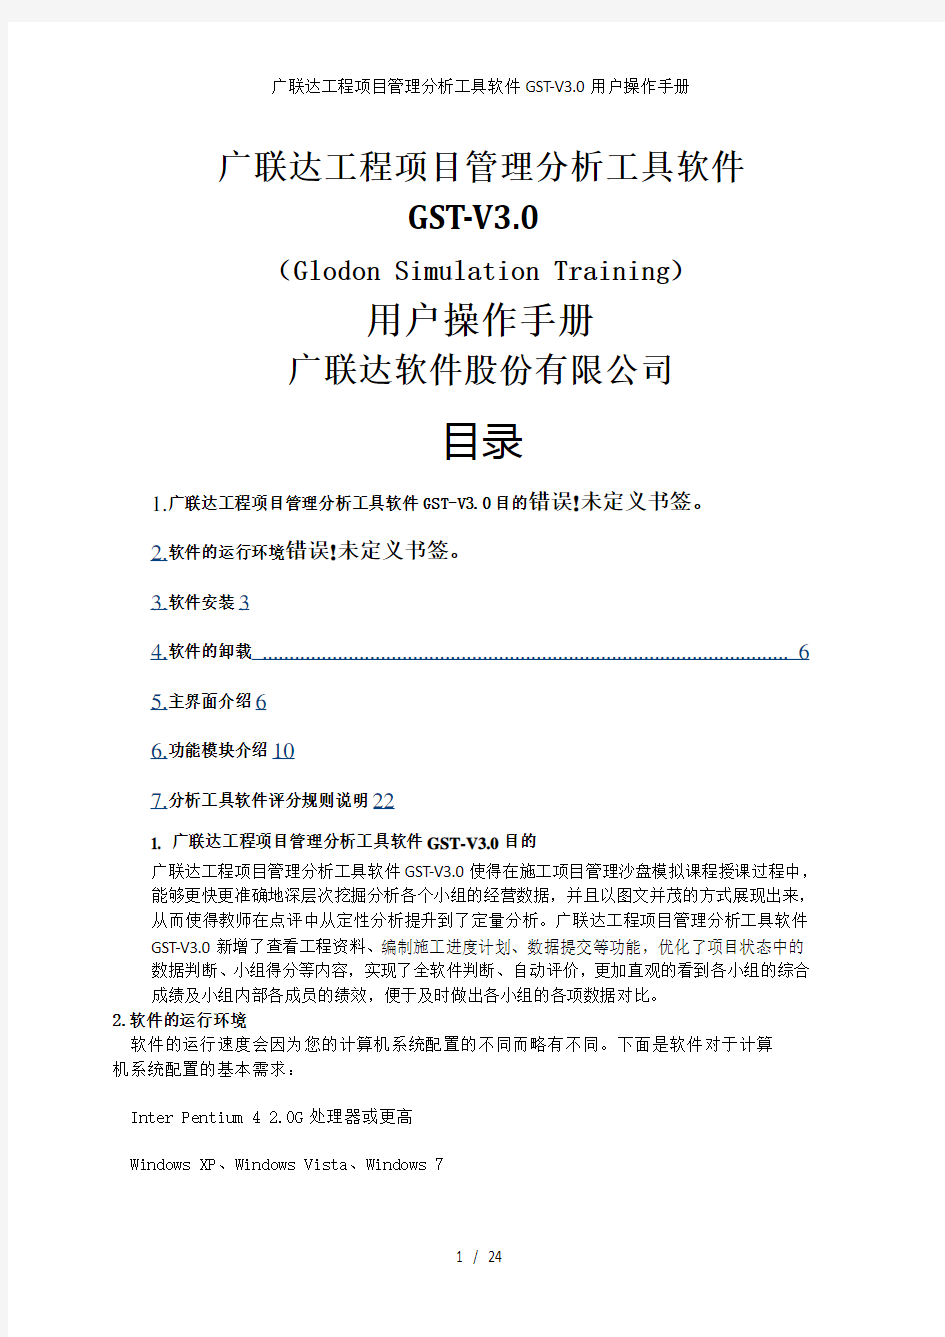 广联达工程项目管理分析工具软件GST-V3.0用户操作手册